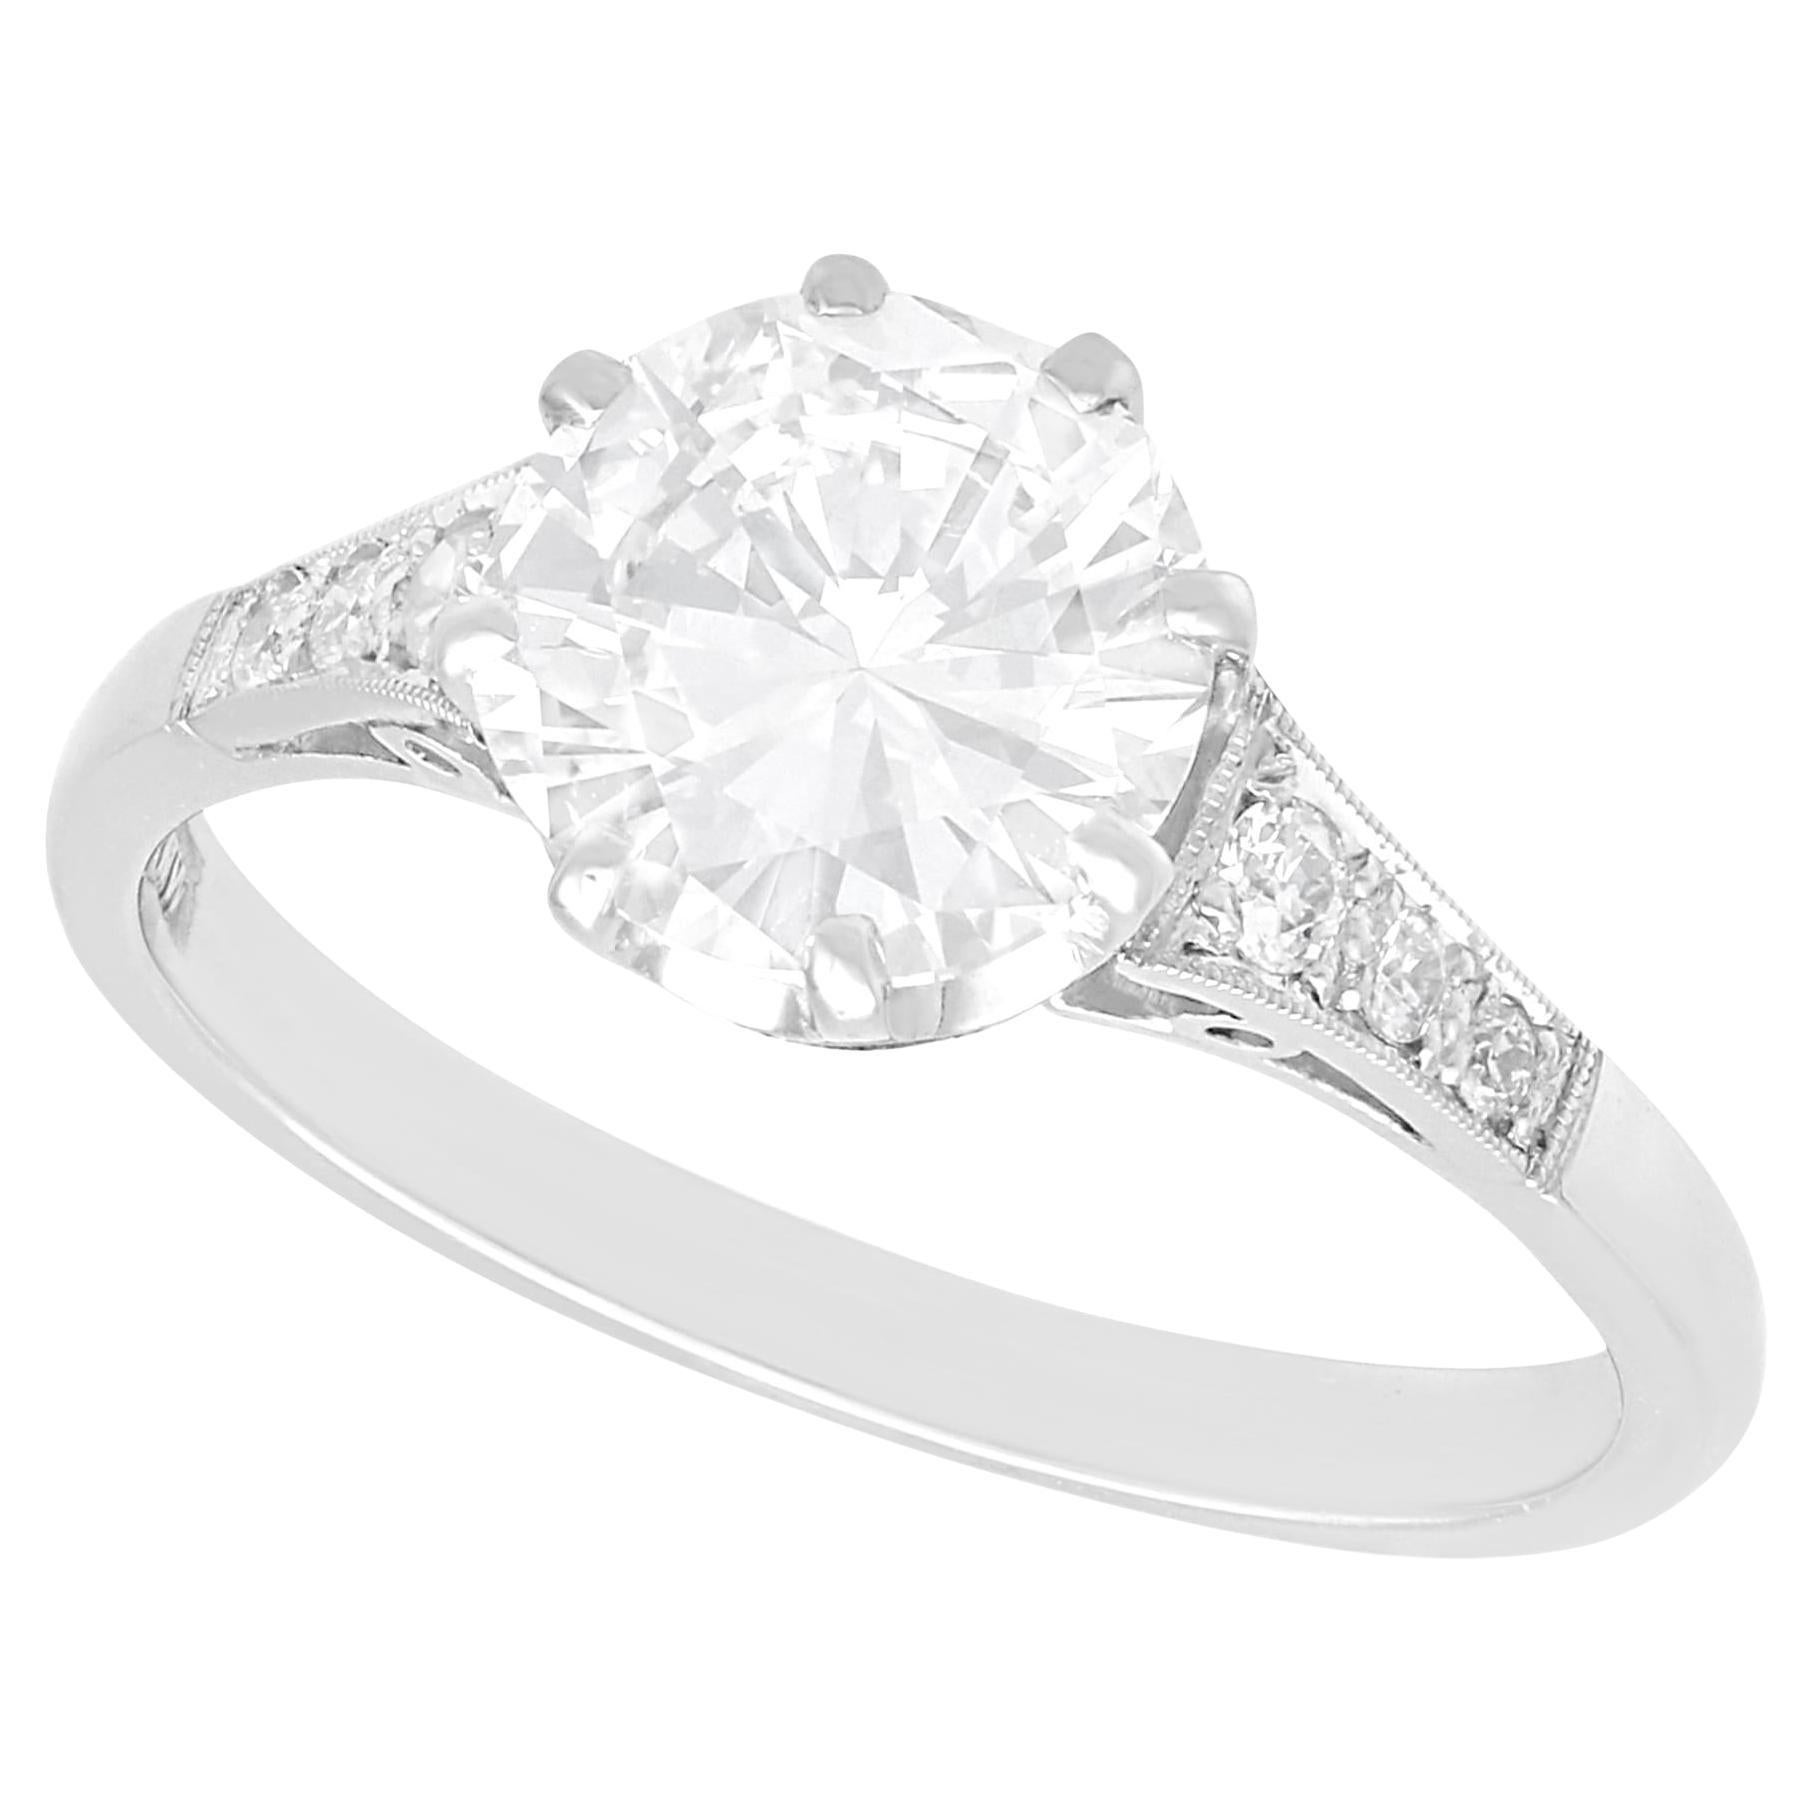 1.74 Carat Diamond Solitaire Engagement Ring in Platinum